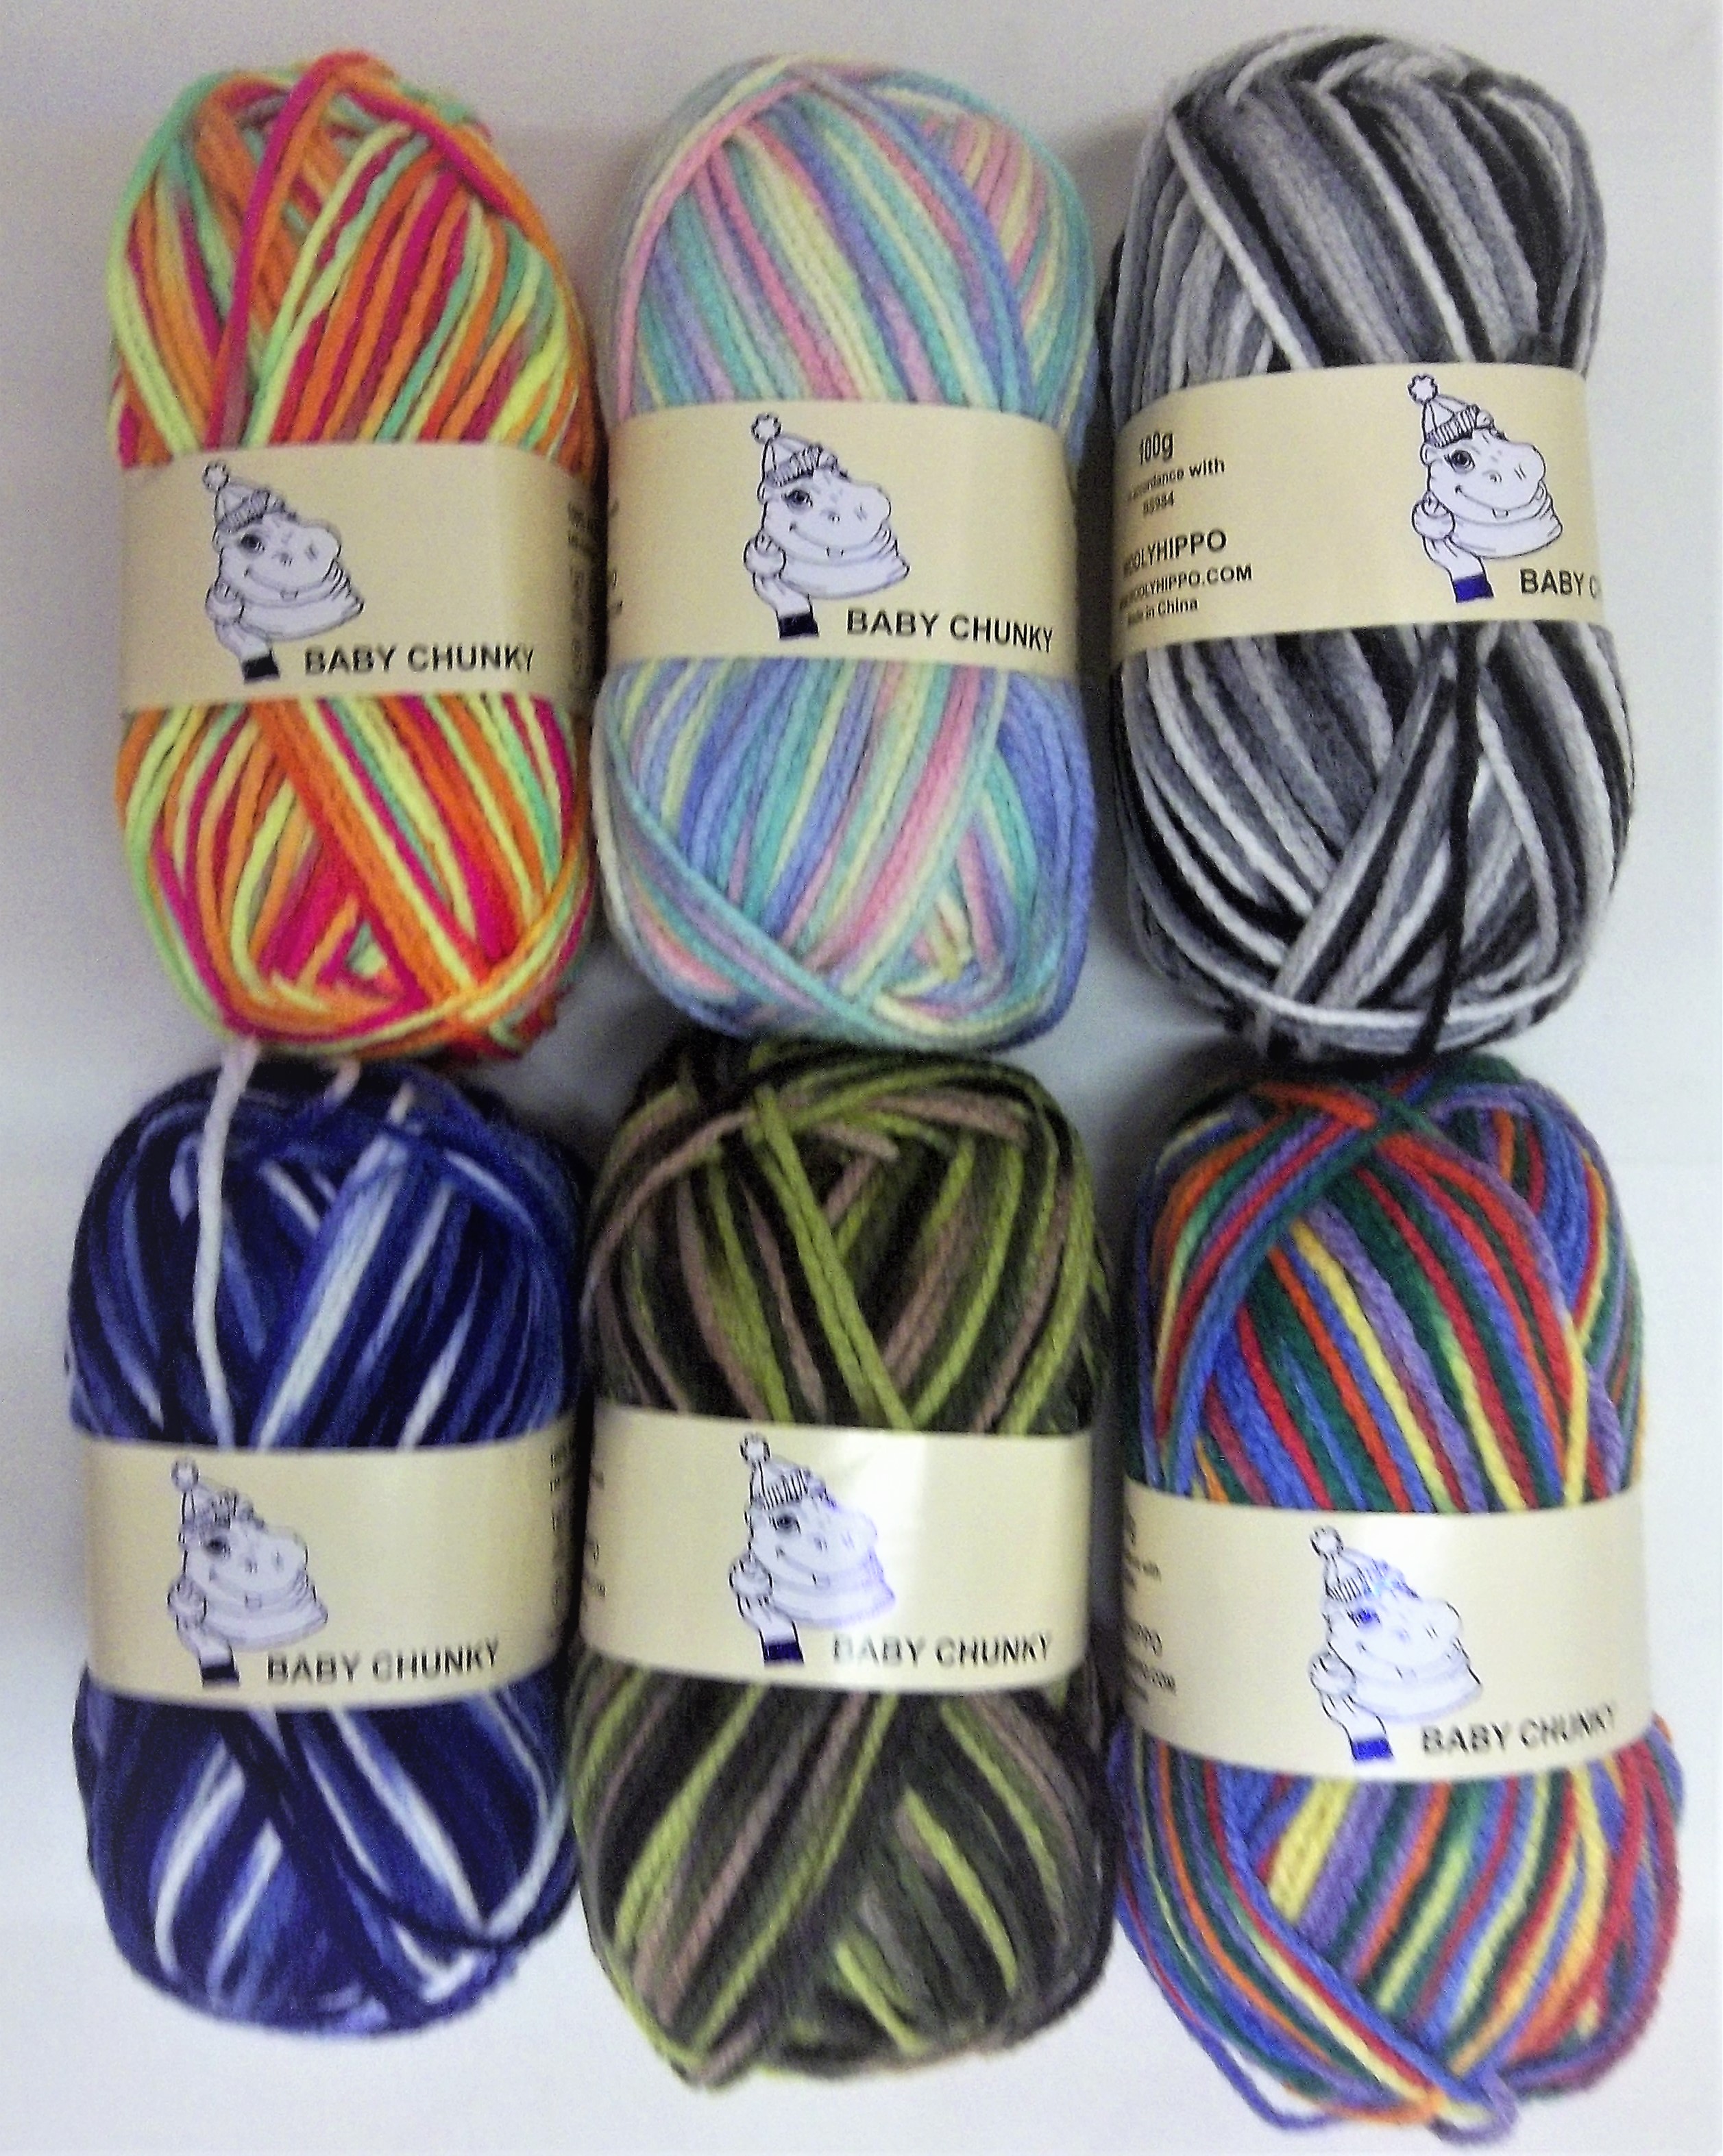 Woolyhippo Chunky Random 100% Acrylic Knitting Yarn Wool 100g Soft Crochet